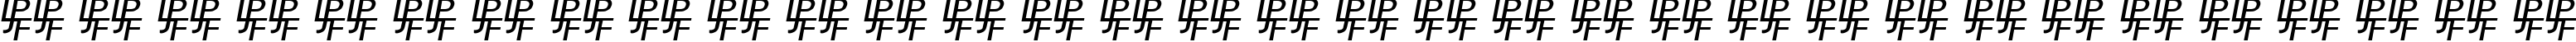 Пример написания русского алфавита шрифтом Bridgnorth Capitals